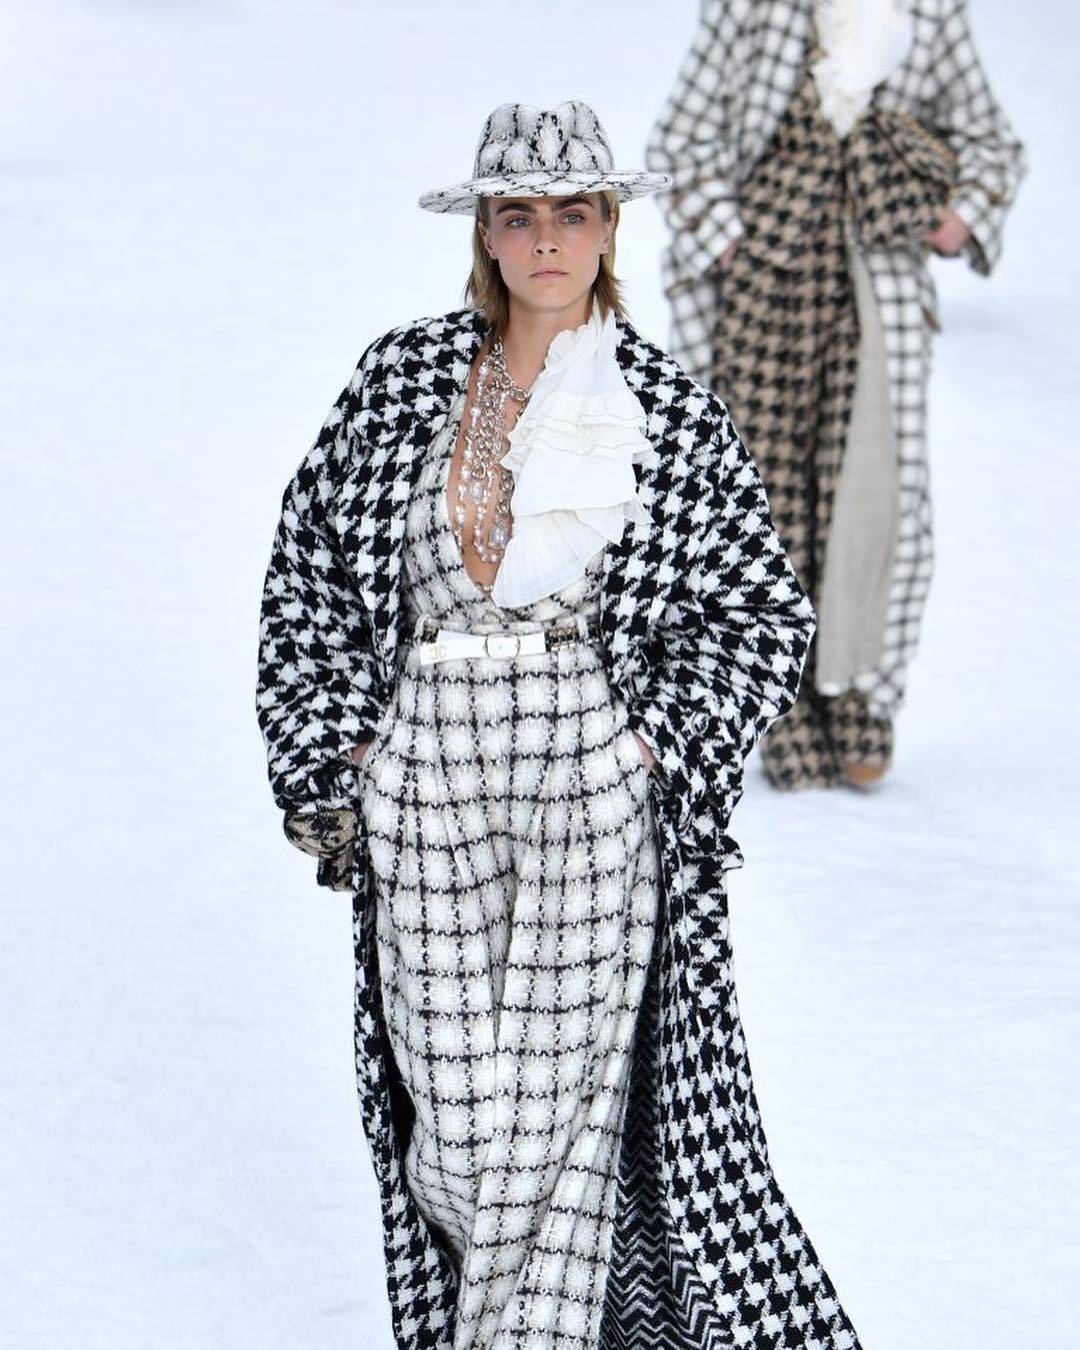 ideas de look invierno 2019, Cara Delevingne con un mono de lana blanco en cuadros negros, chaqueta larga en blanco y negro 